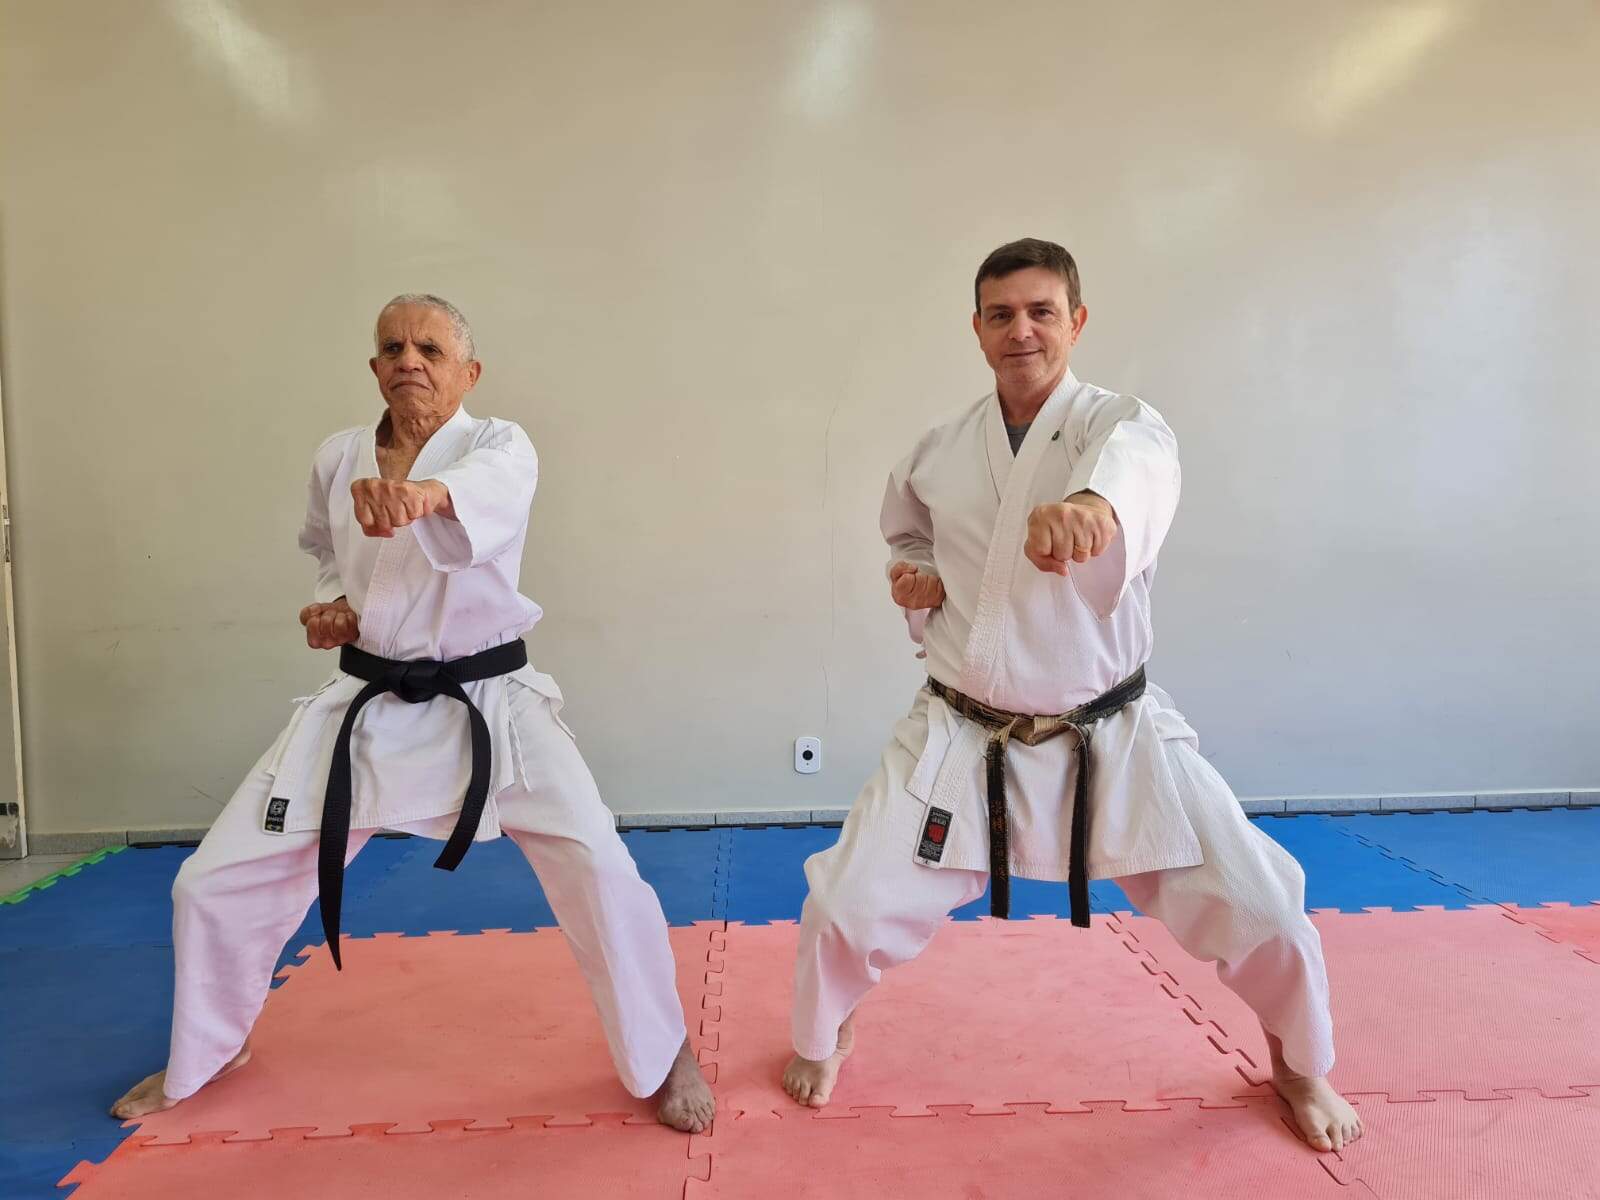 Treinado pelo professor Ton, o carateca luta o estilo shotokan, com aulas três vezes por semana